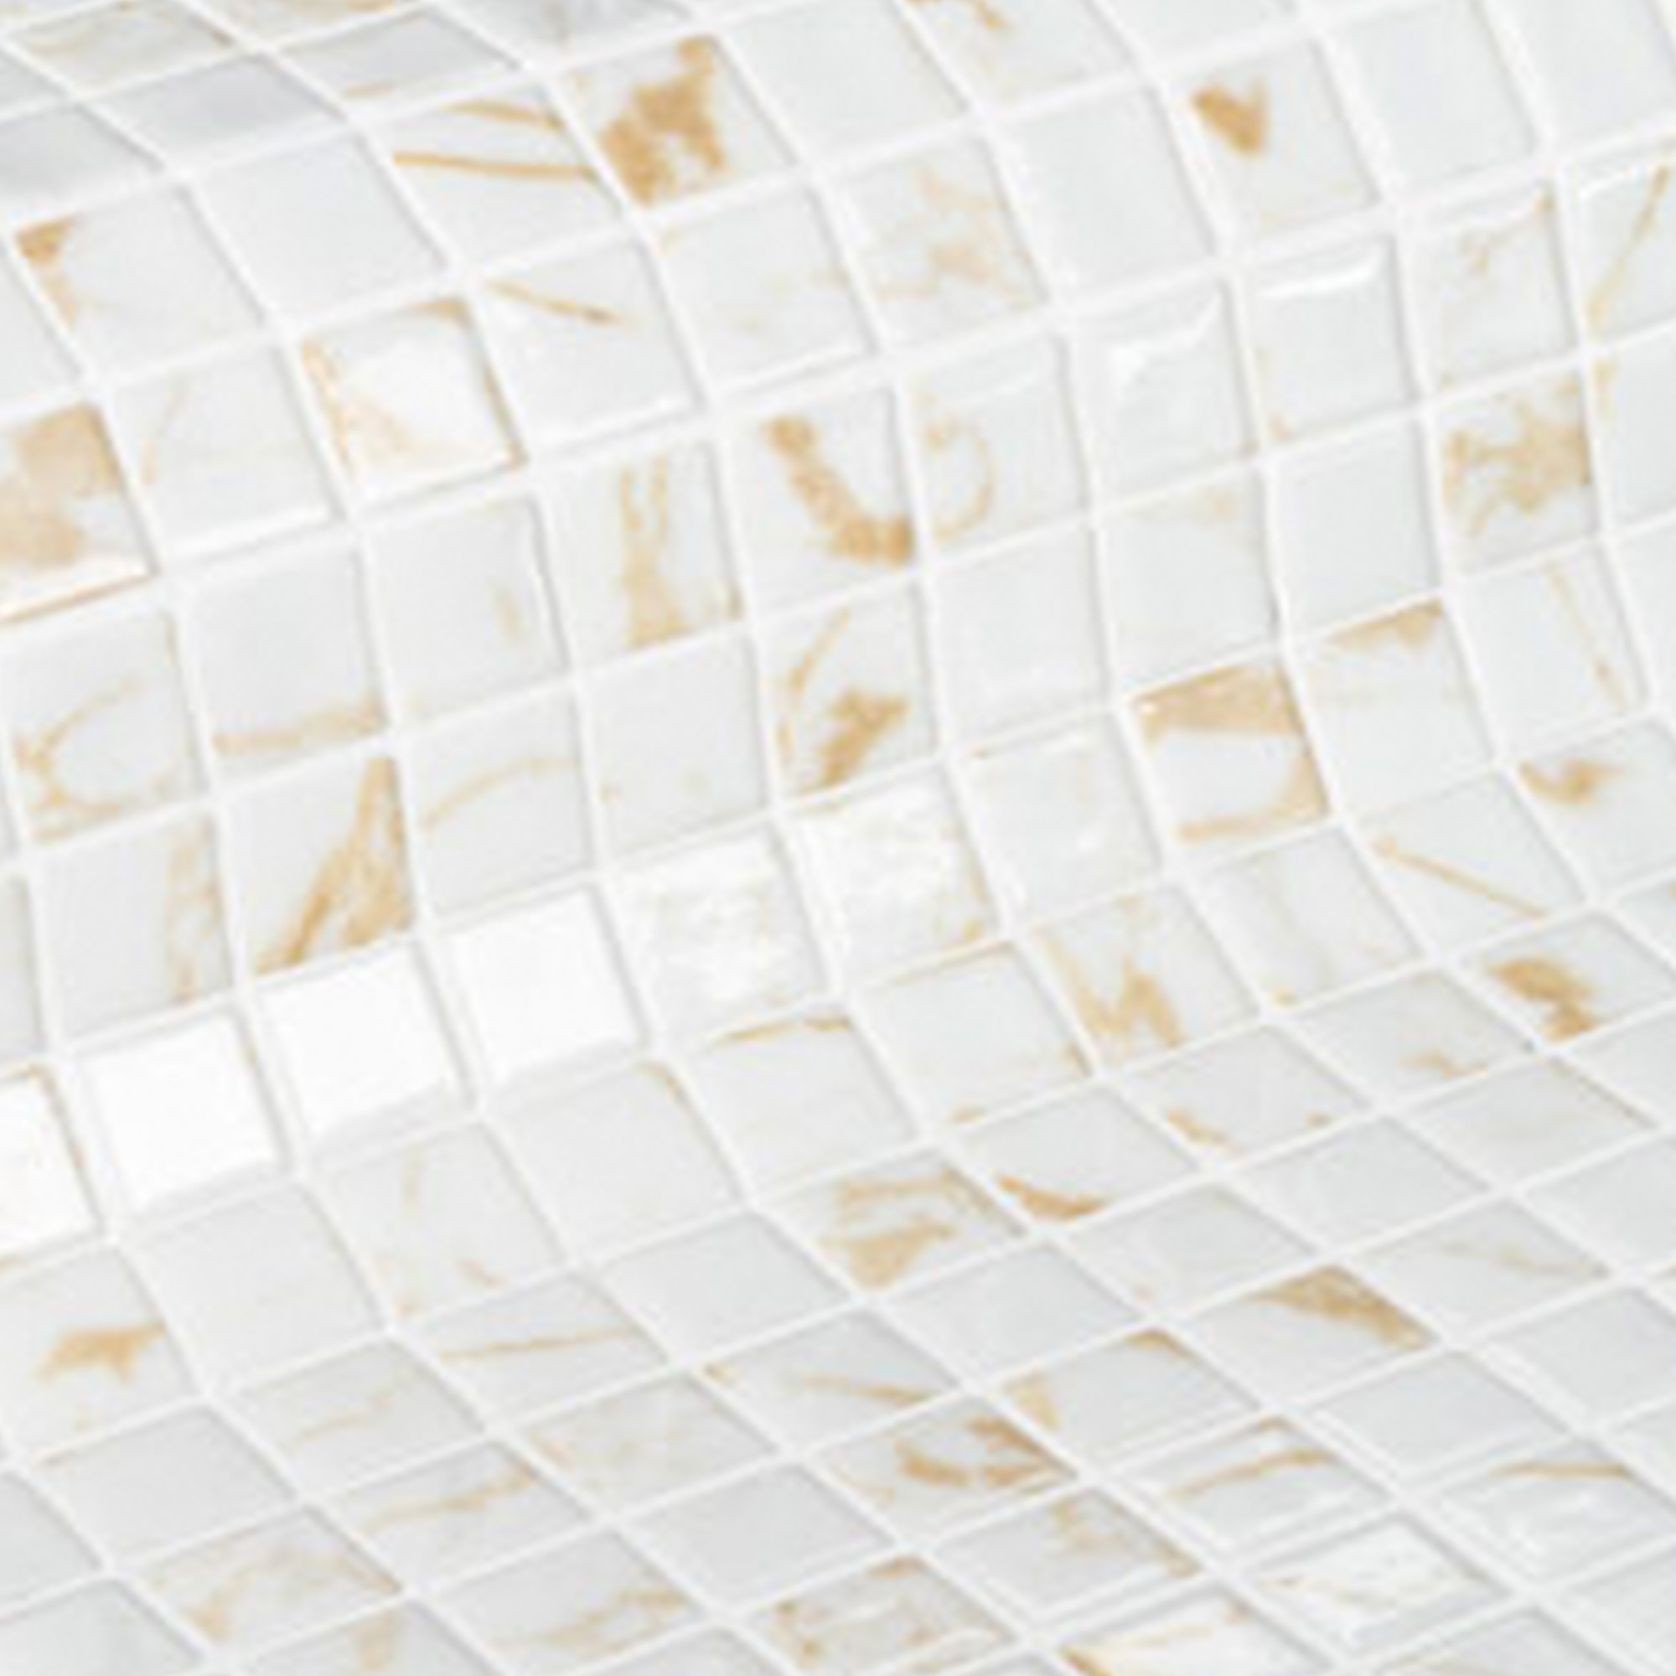 Quartz Mosaic Tile | Gemma Collection by Ezarri gallery detail image